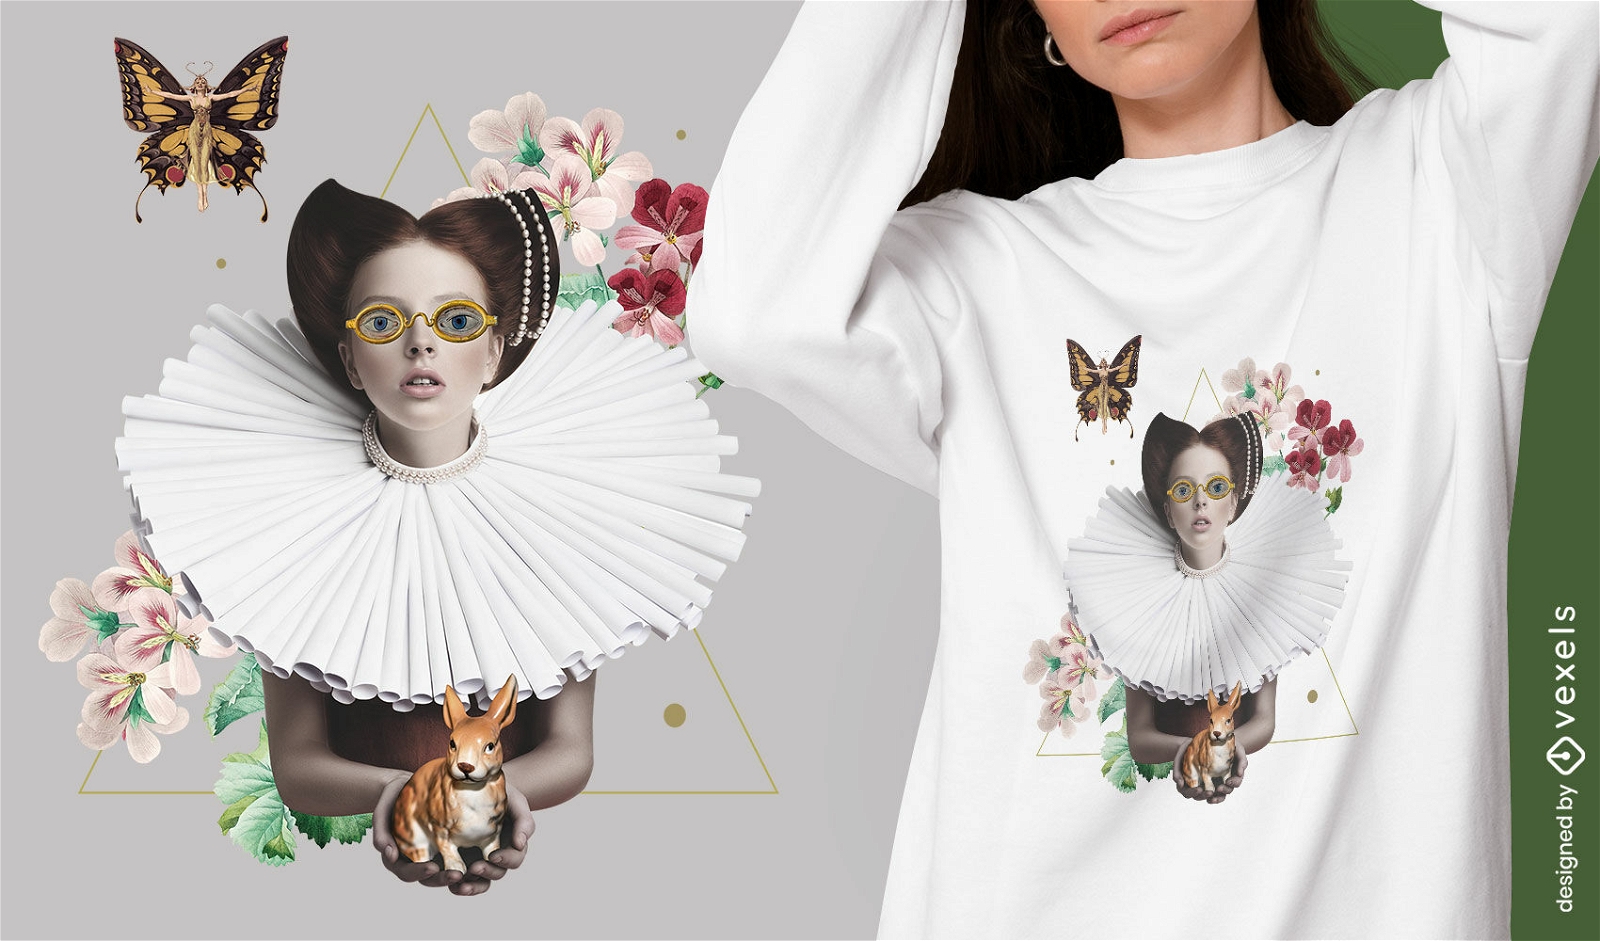 Child queen absurd nature t-shirt design